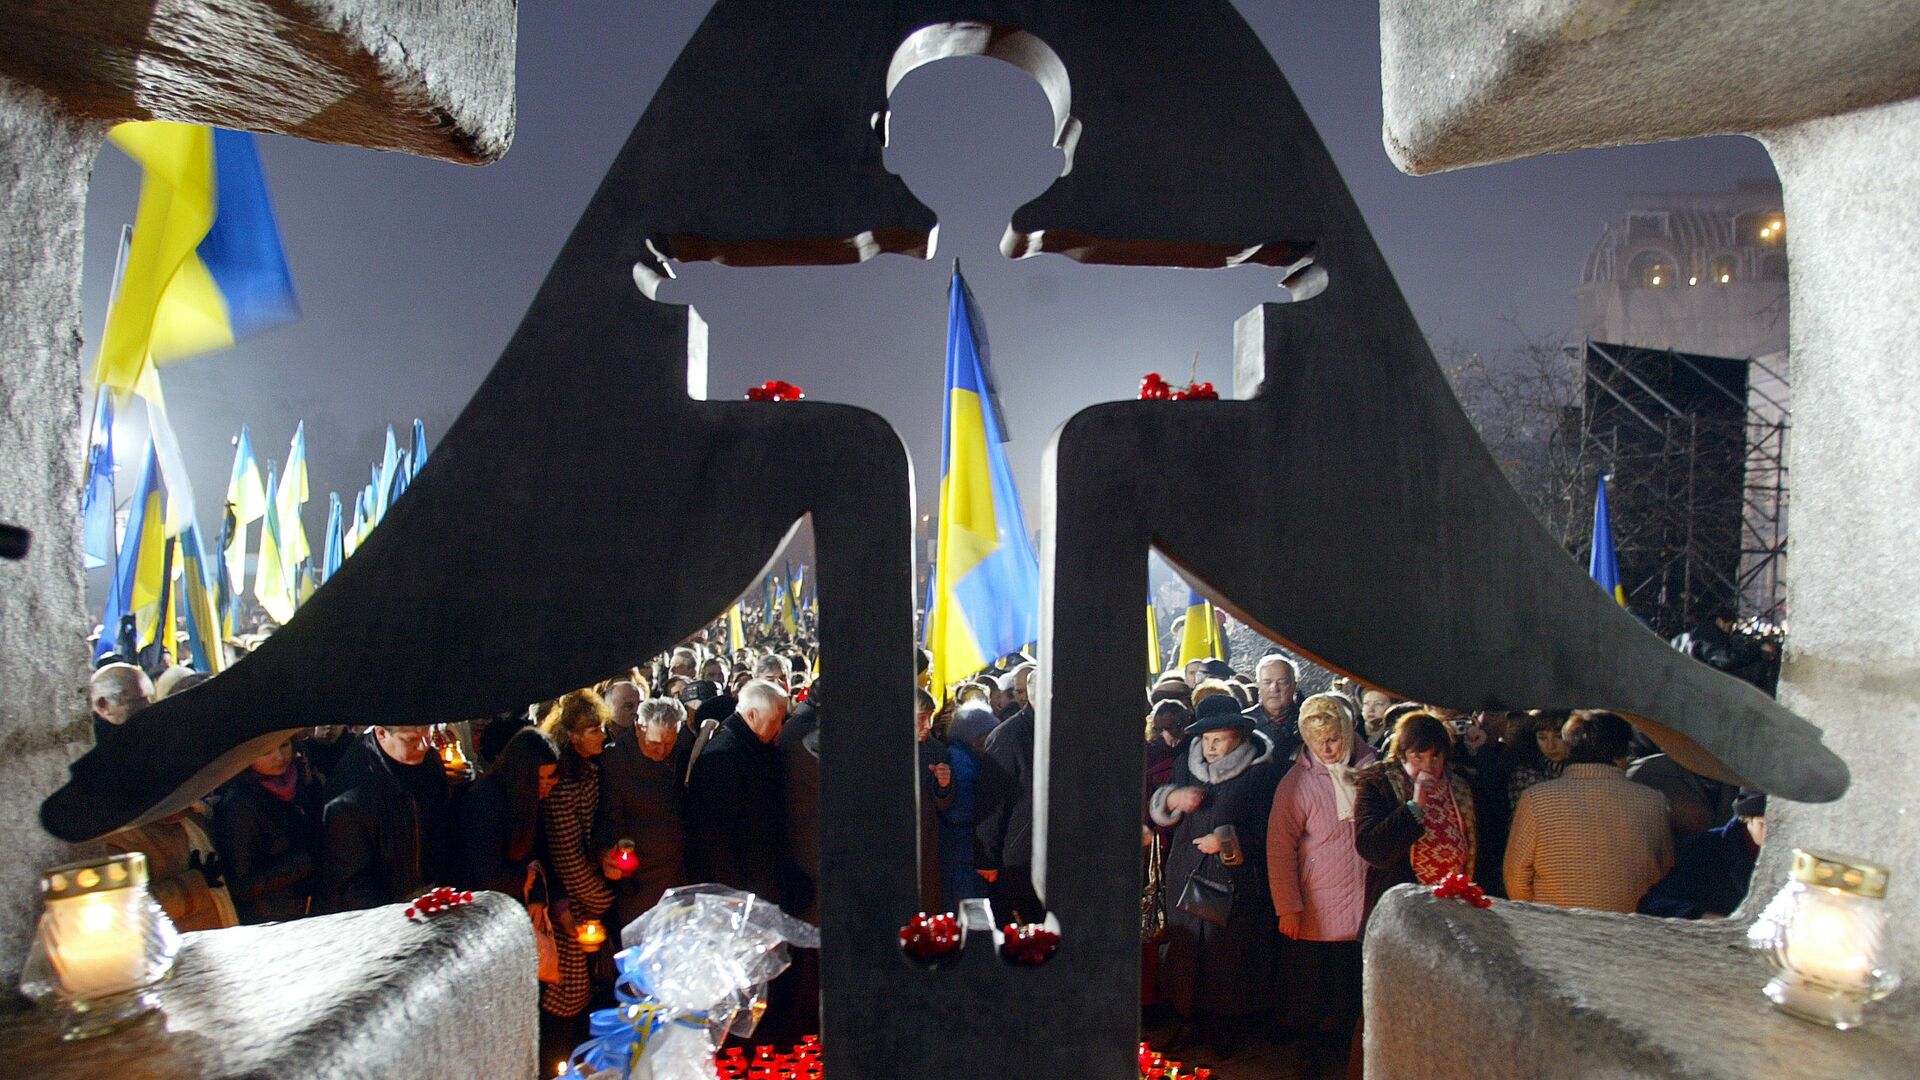 Люди зажигают свечи в день памяти жертв голодомора 1932-1933 годов на Украине  - РИА Новости, 1920, 16.12.2018